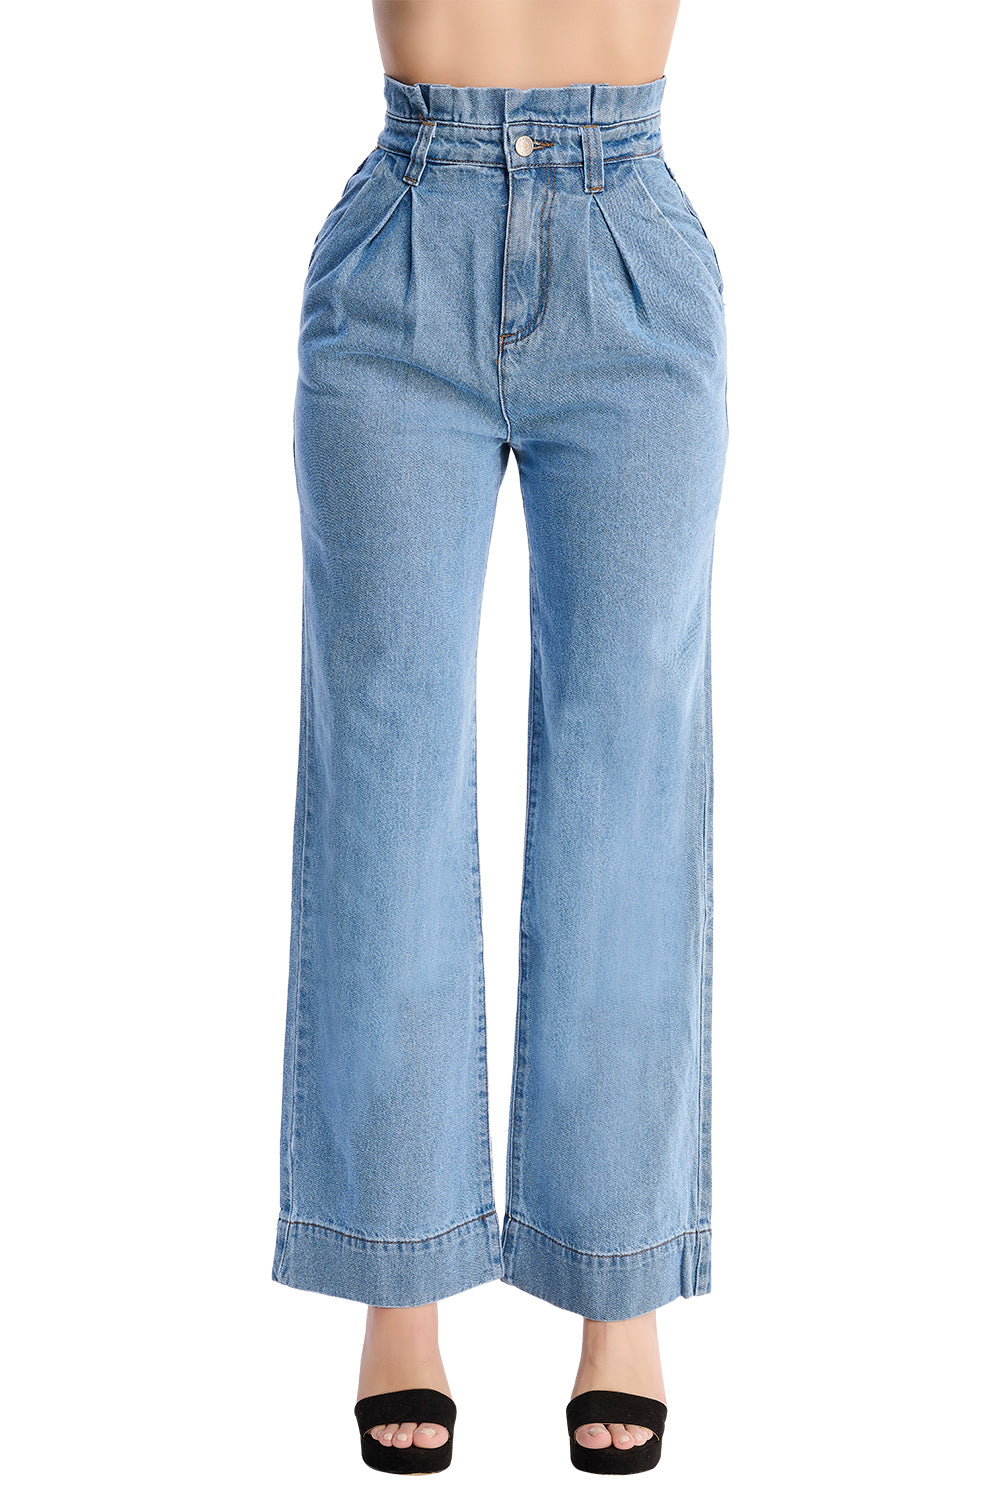 Jeans Wide Leg: Mezclilla 100% Algodón, Tela Rígida